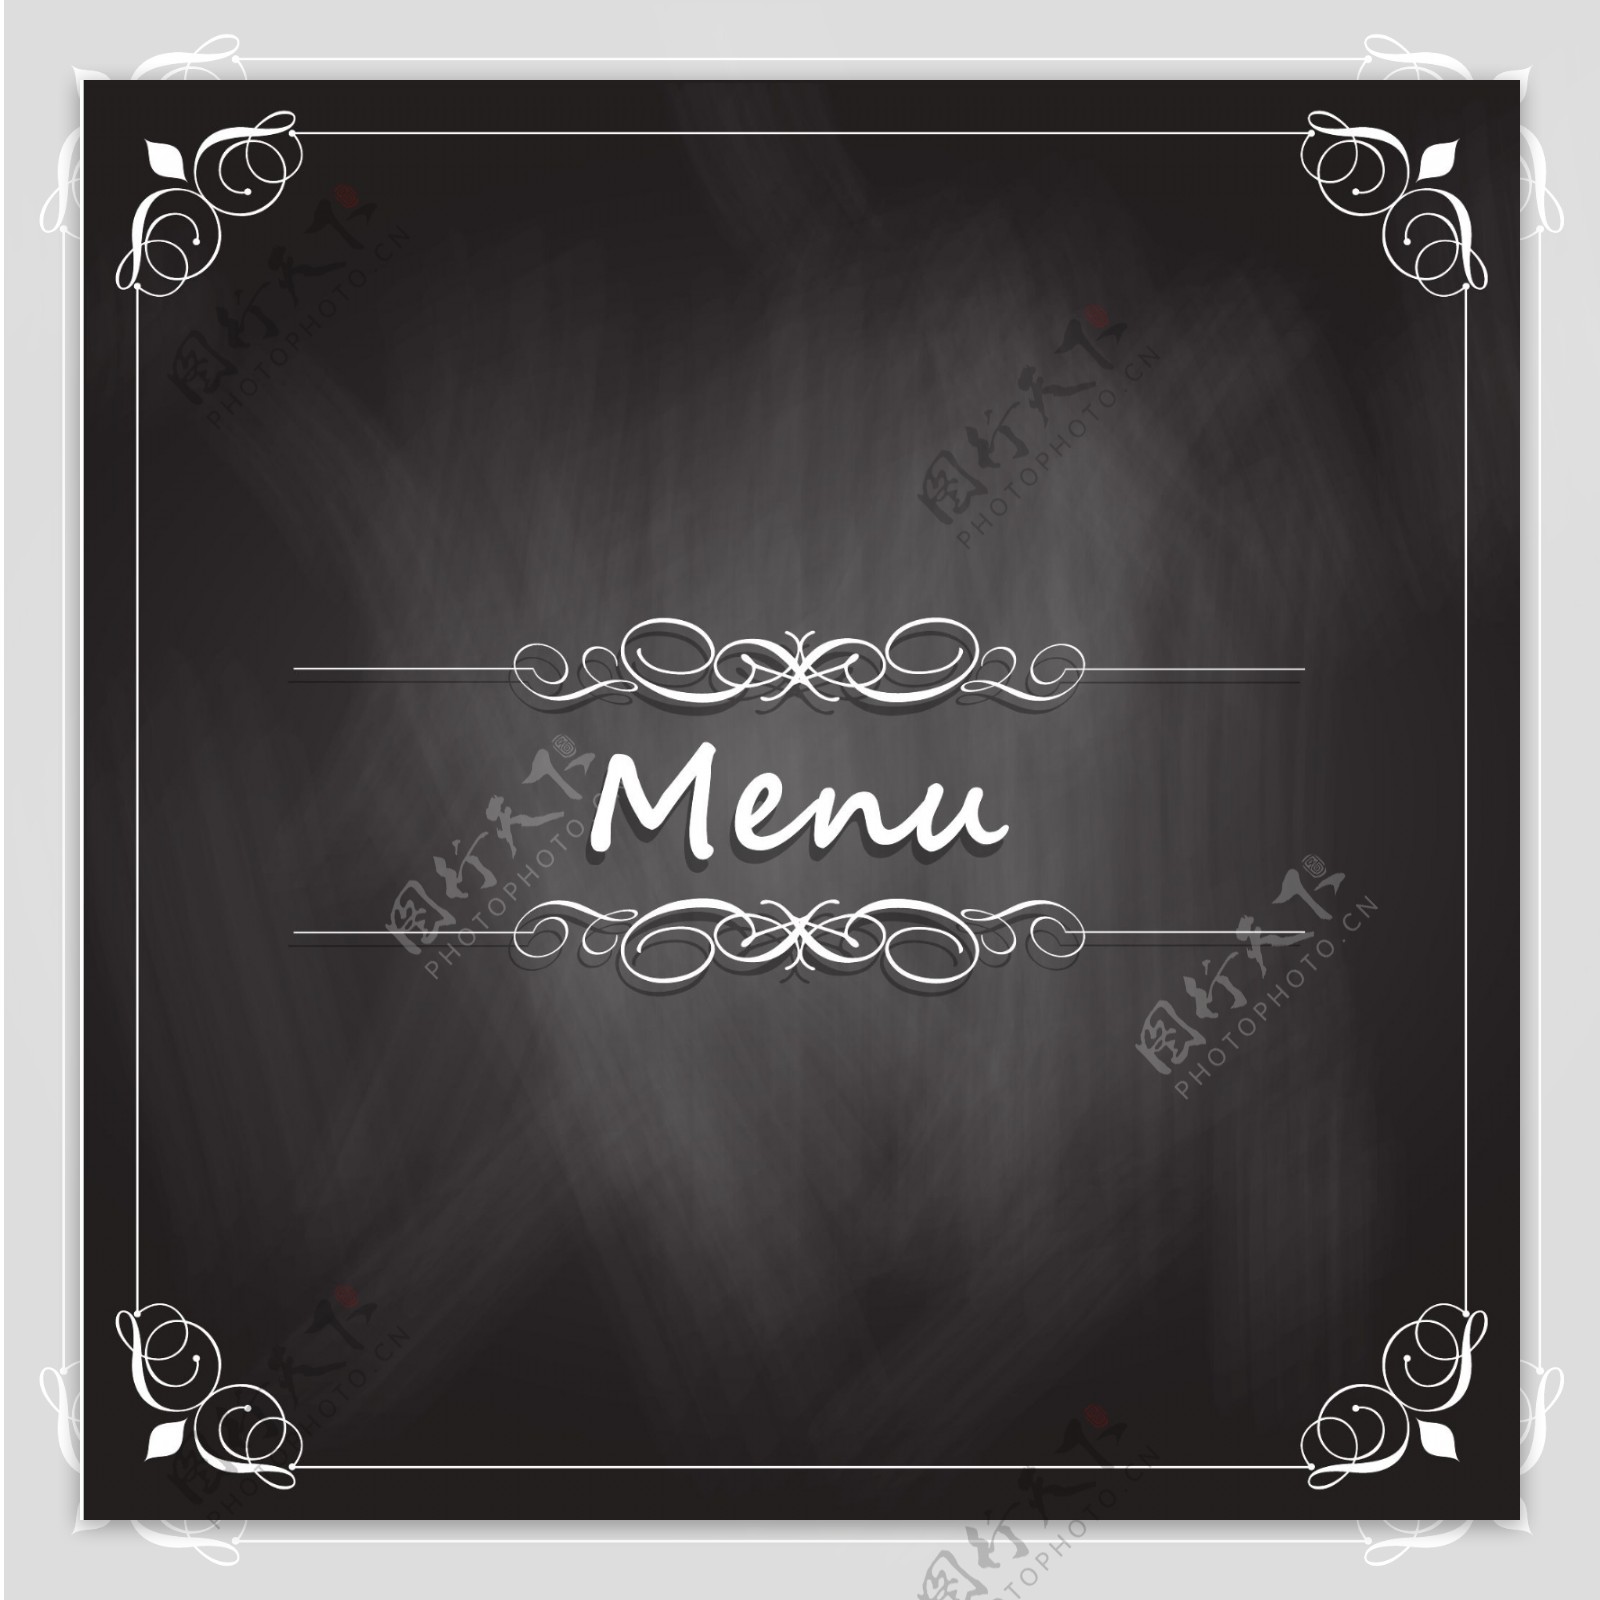 餐厅黑板风格菜单